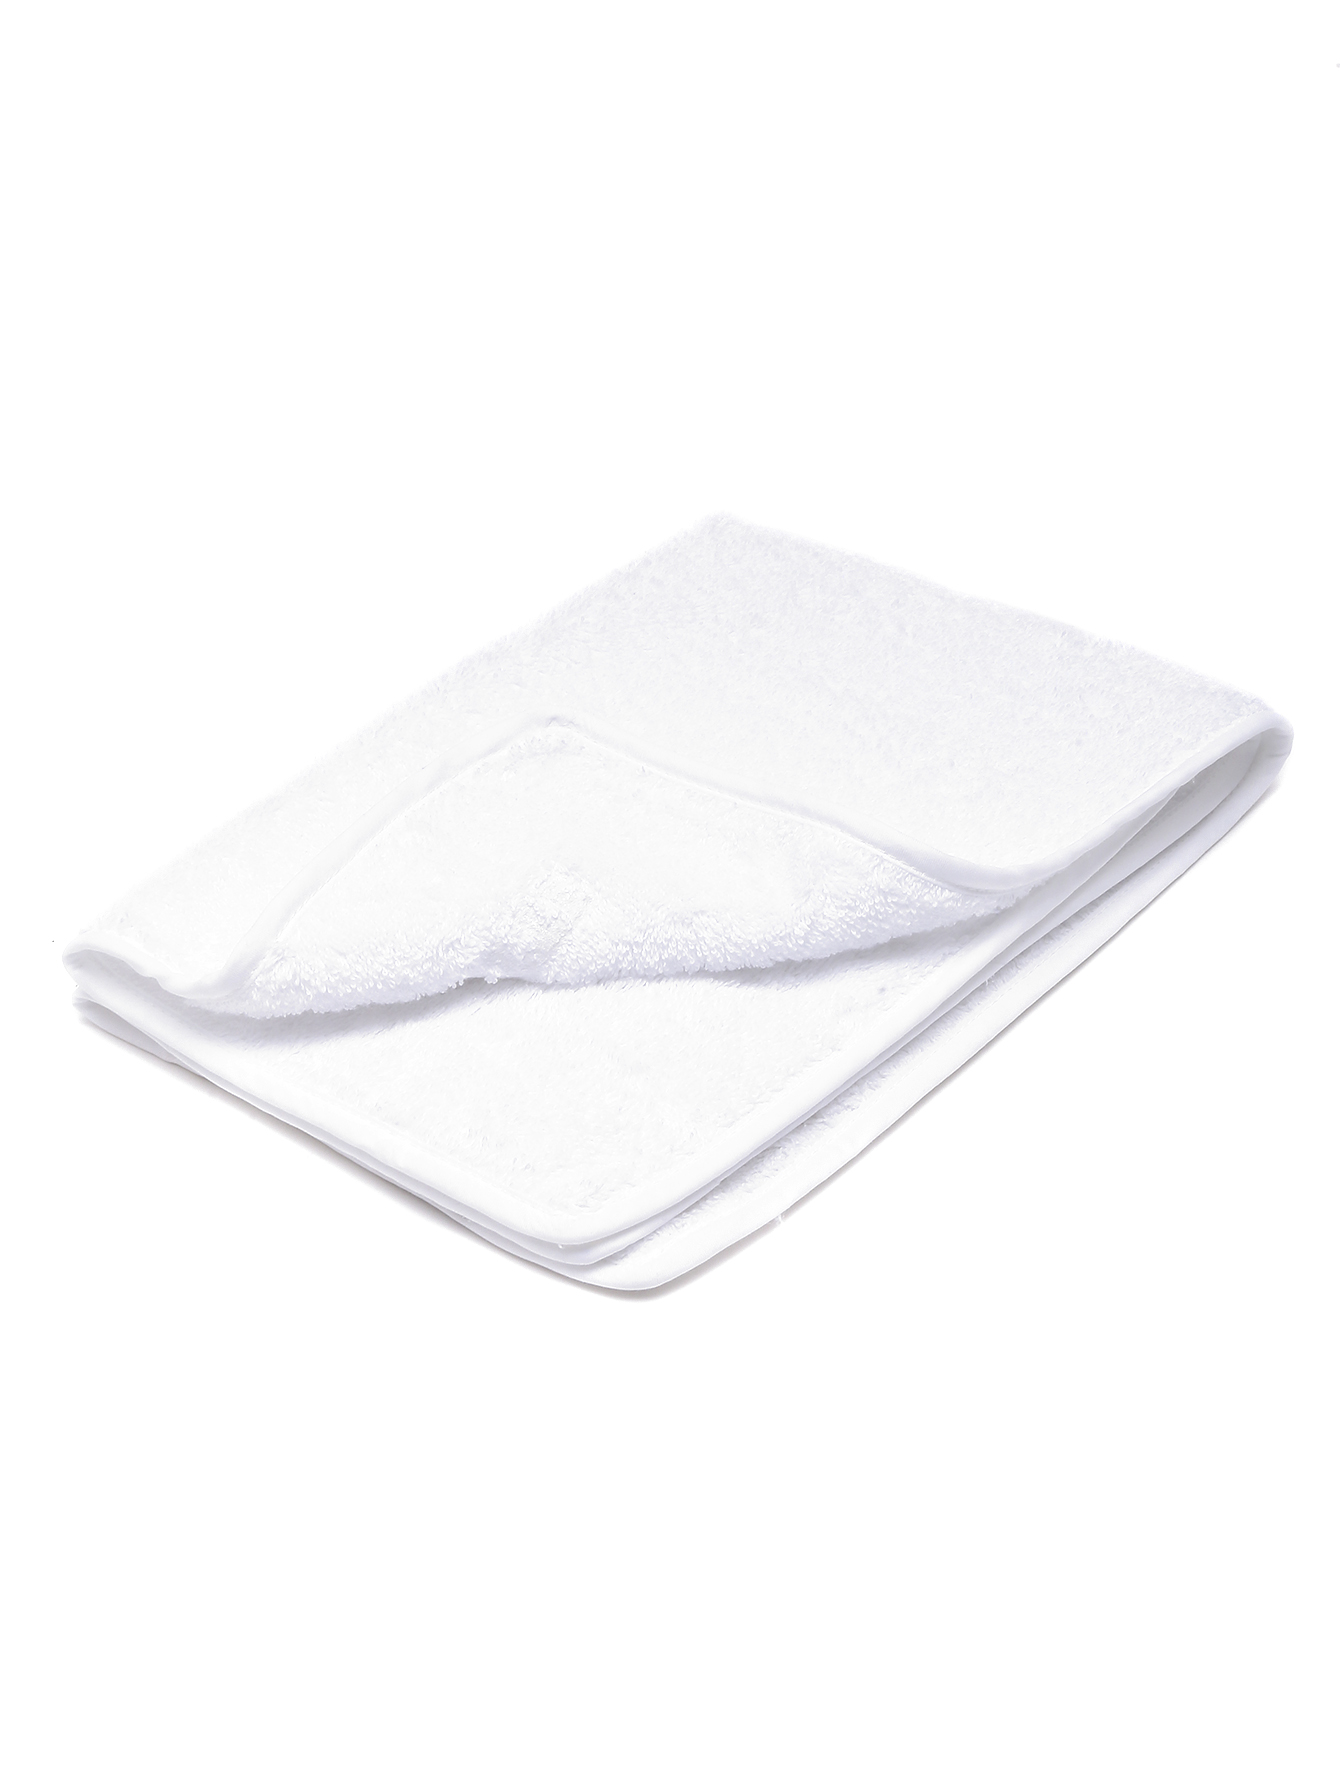 Махровое полотенце из хлопка  - Обтравка1